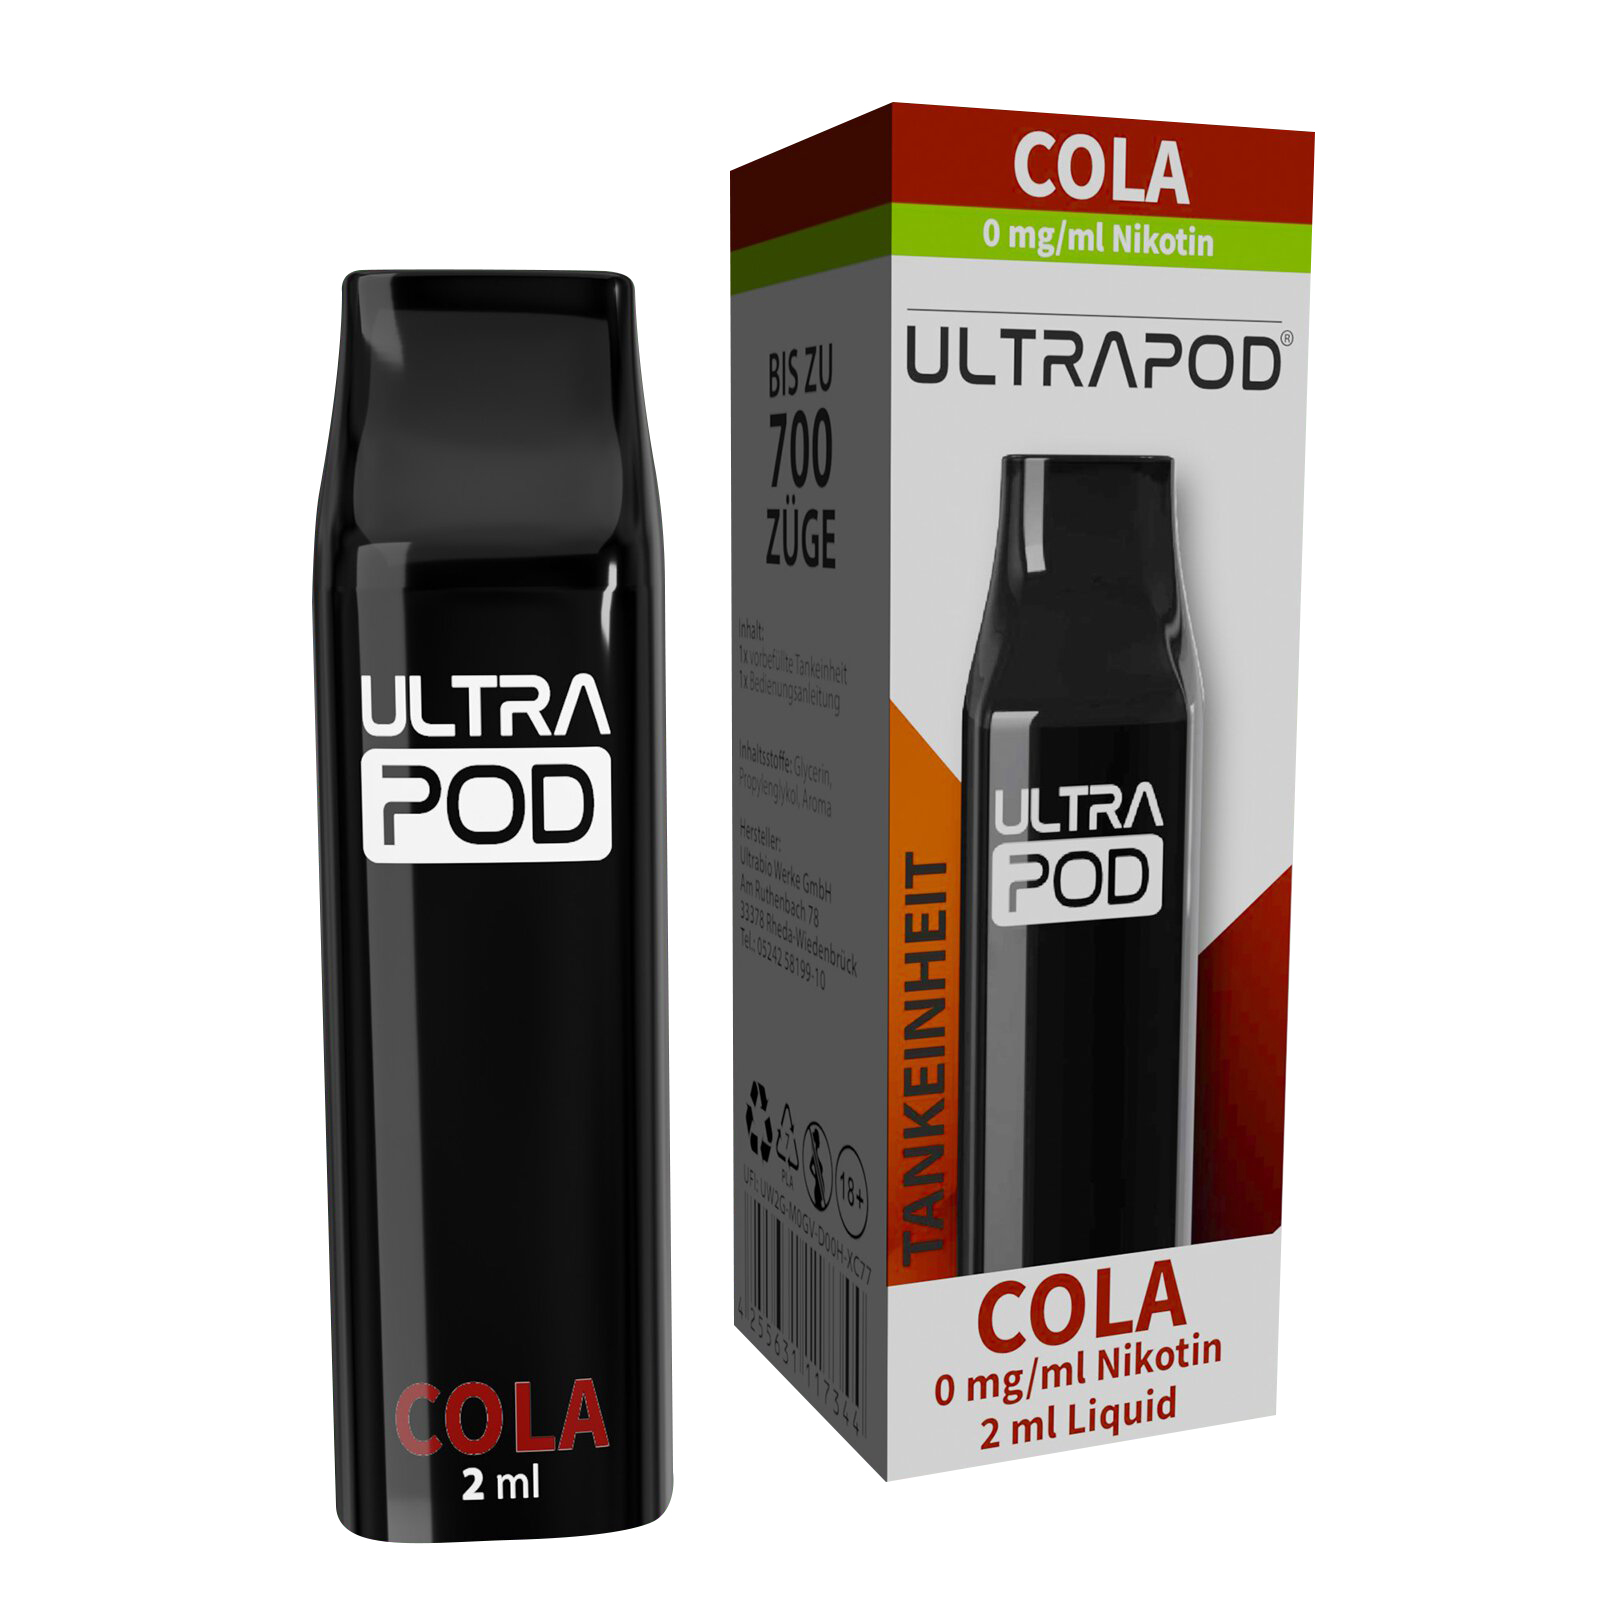 E-Liquidpod ULTRAPOD Cola 0mg